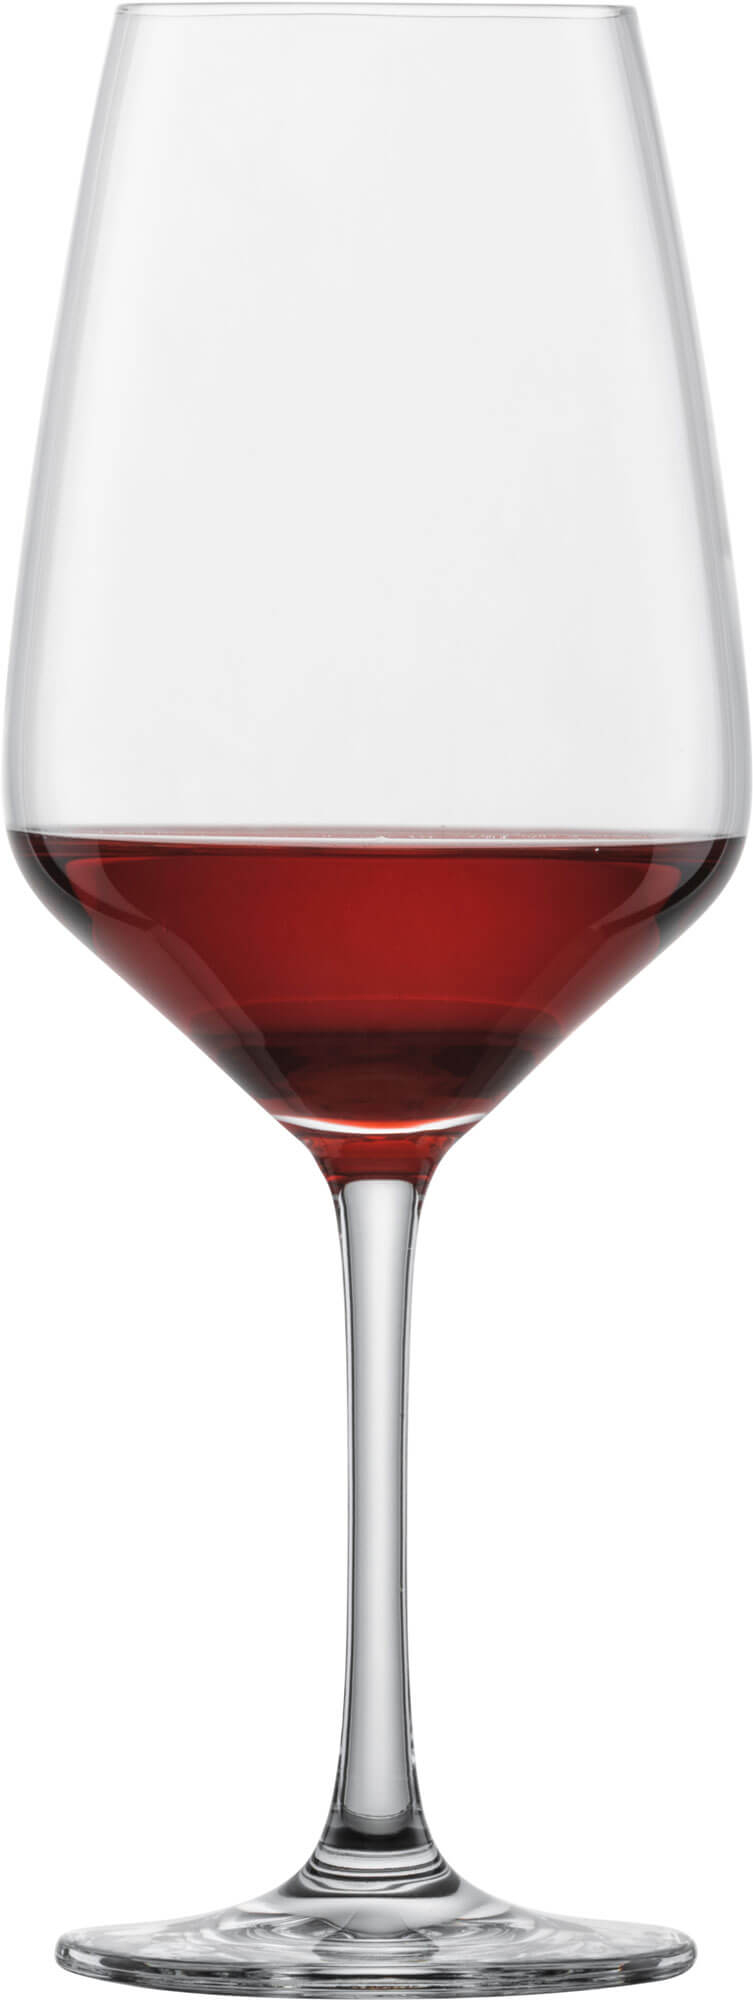 Rotweinglas Taste, Schott Zwiesel - 497ml, 0,25l FS (6 Stk.)